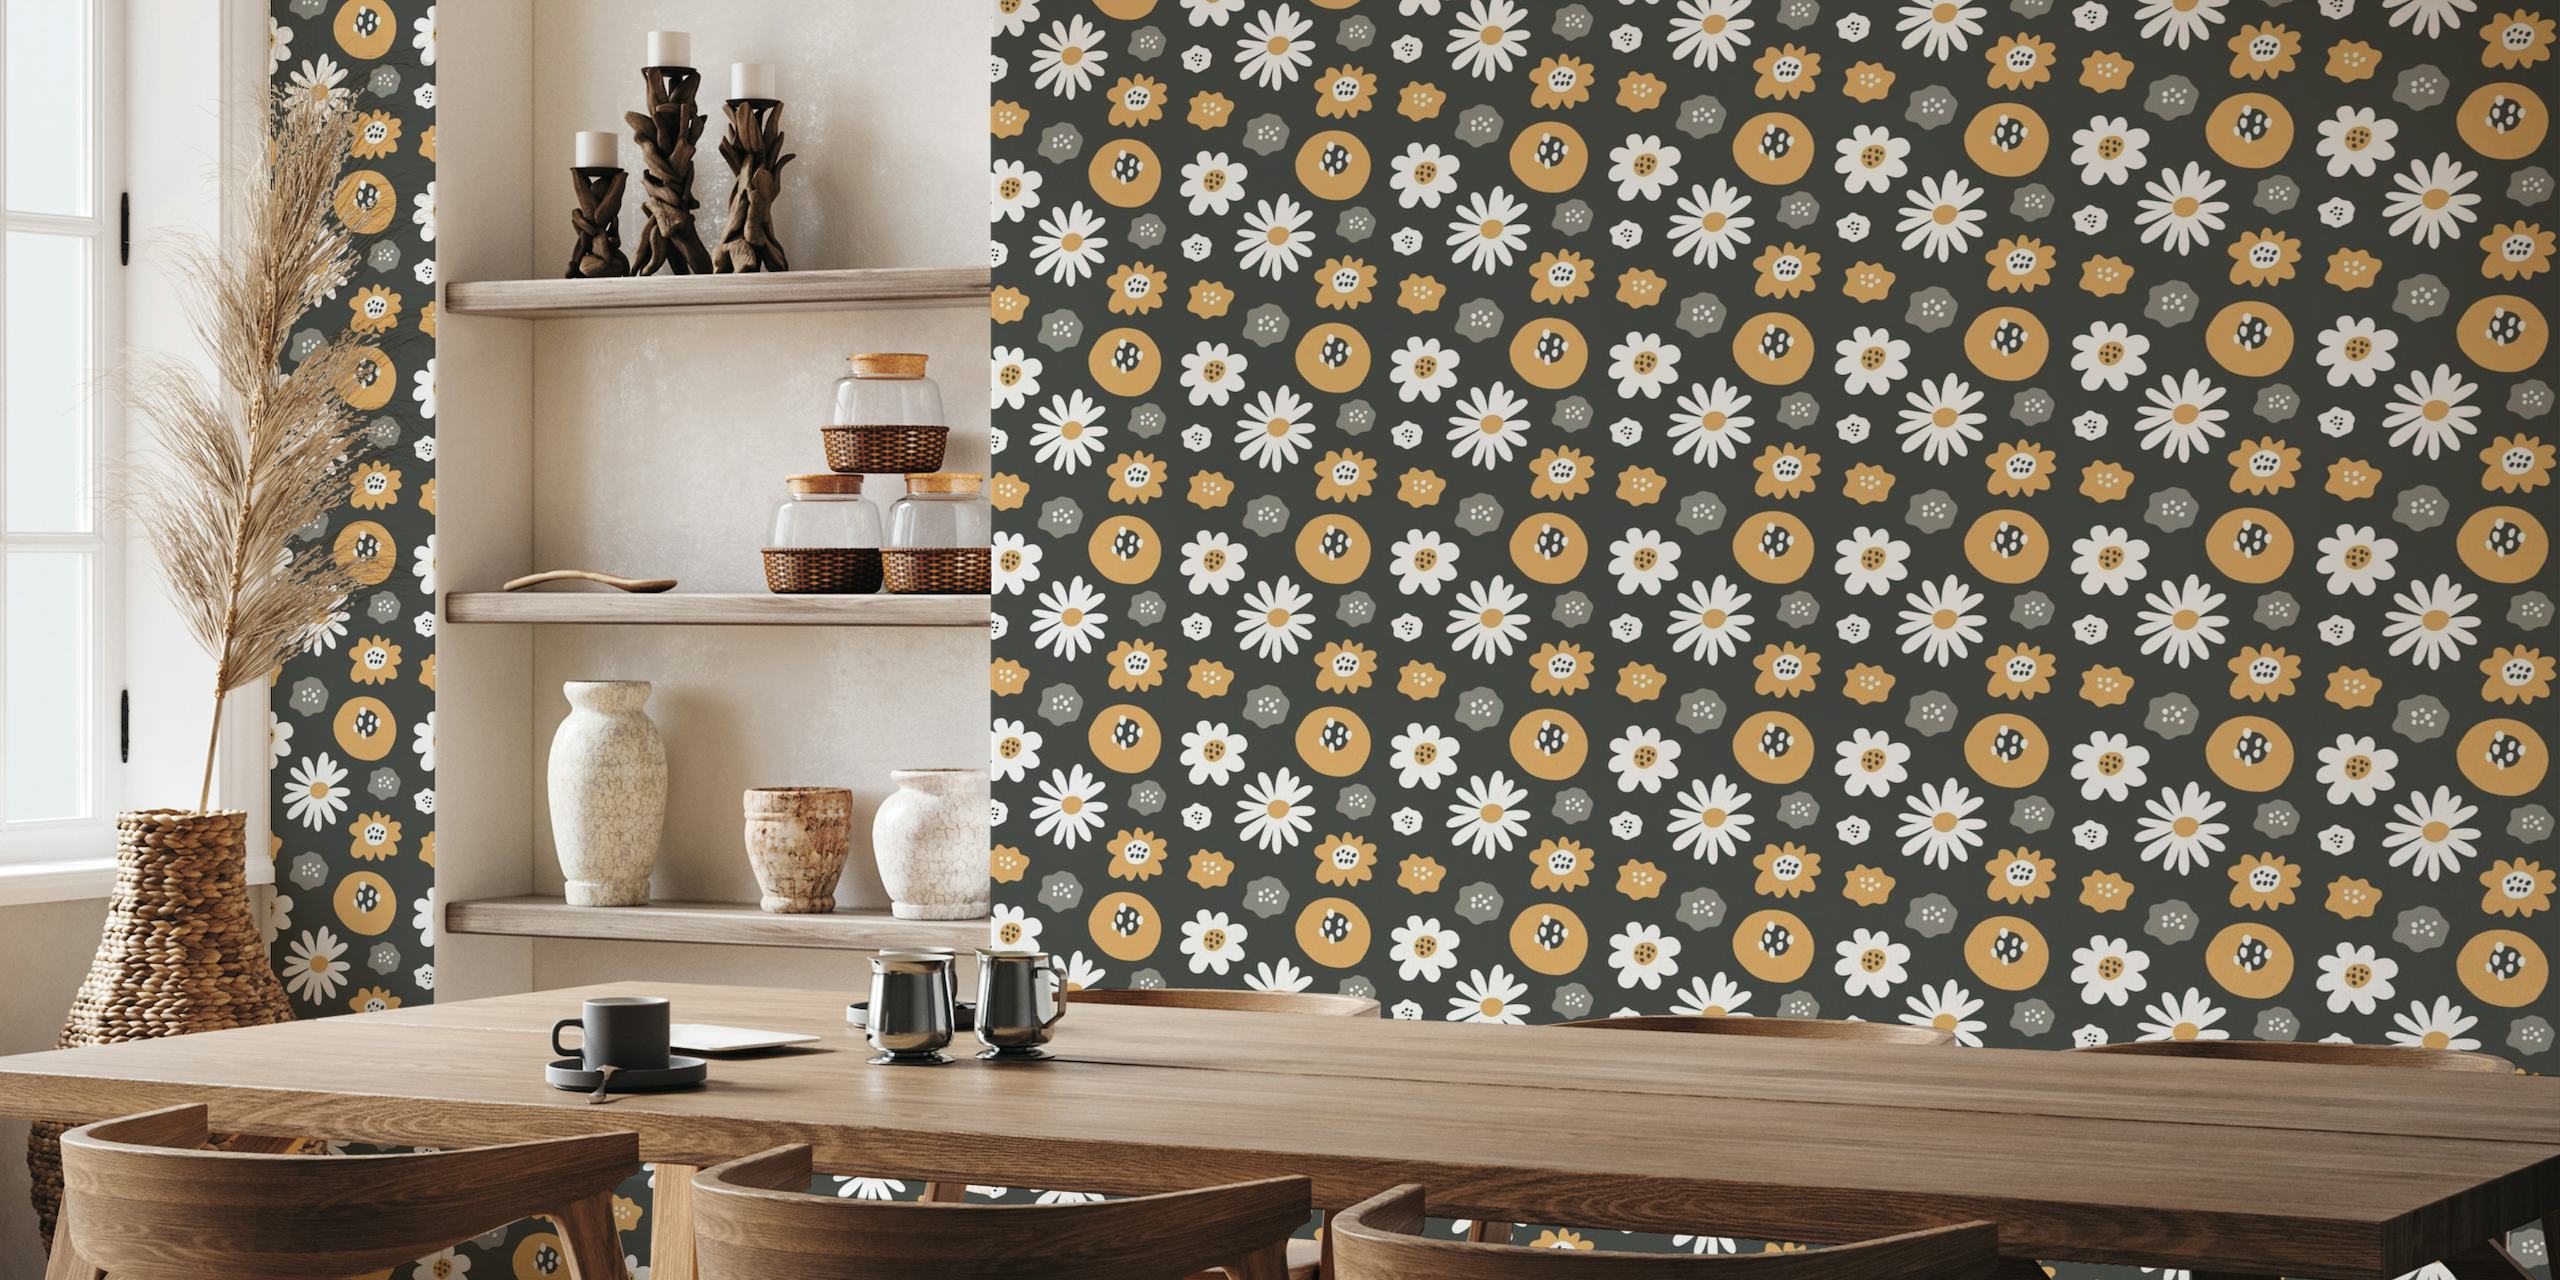 Gestileerd retro-patroon fotobehang met herfstbloemen in crème, oker en grijs op een donkere achtergrond